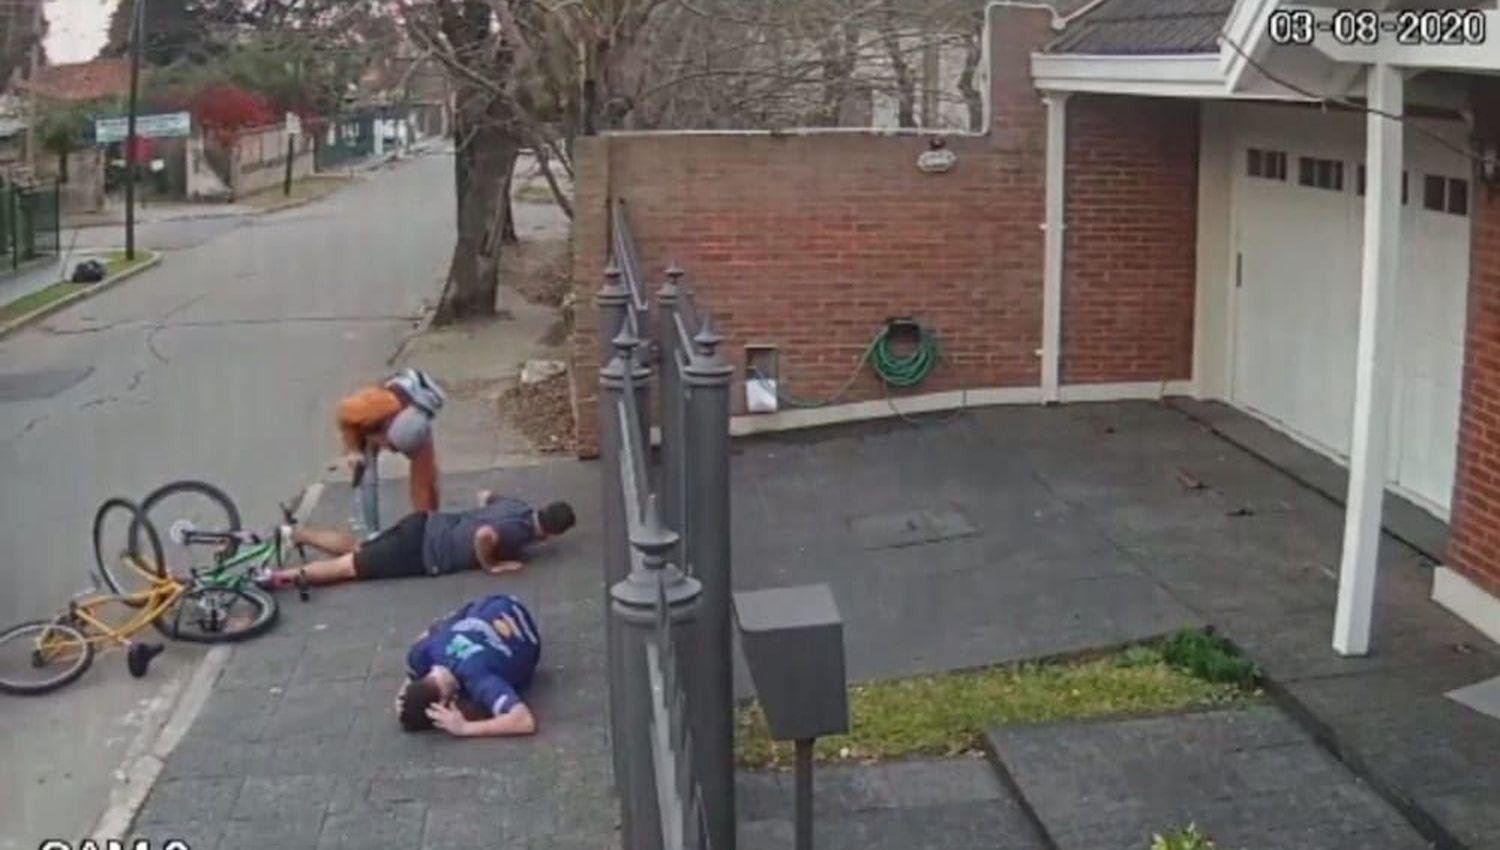 VIDEO  Motochorros asaltaron a padre e hijo les robaron la bicicleta y dispararon al piso antes de escapar